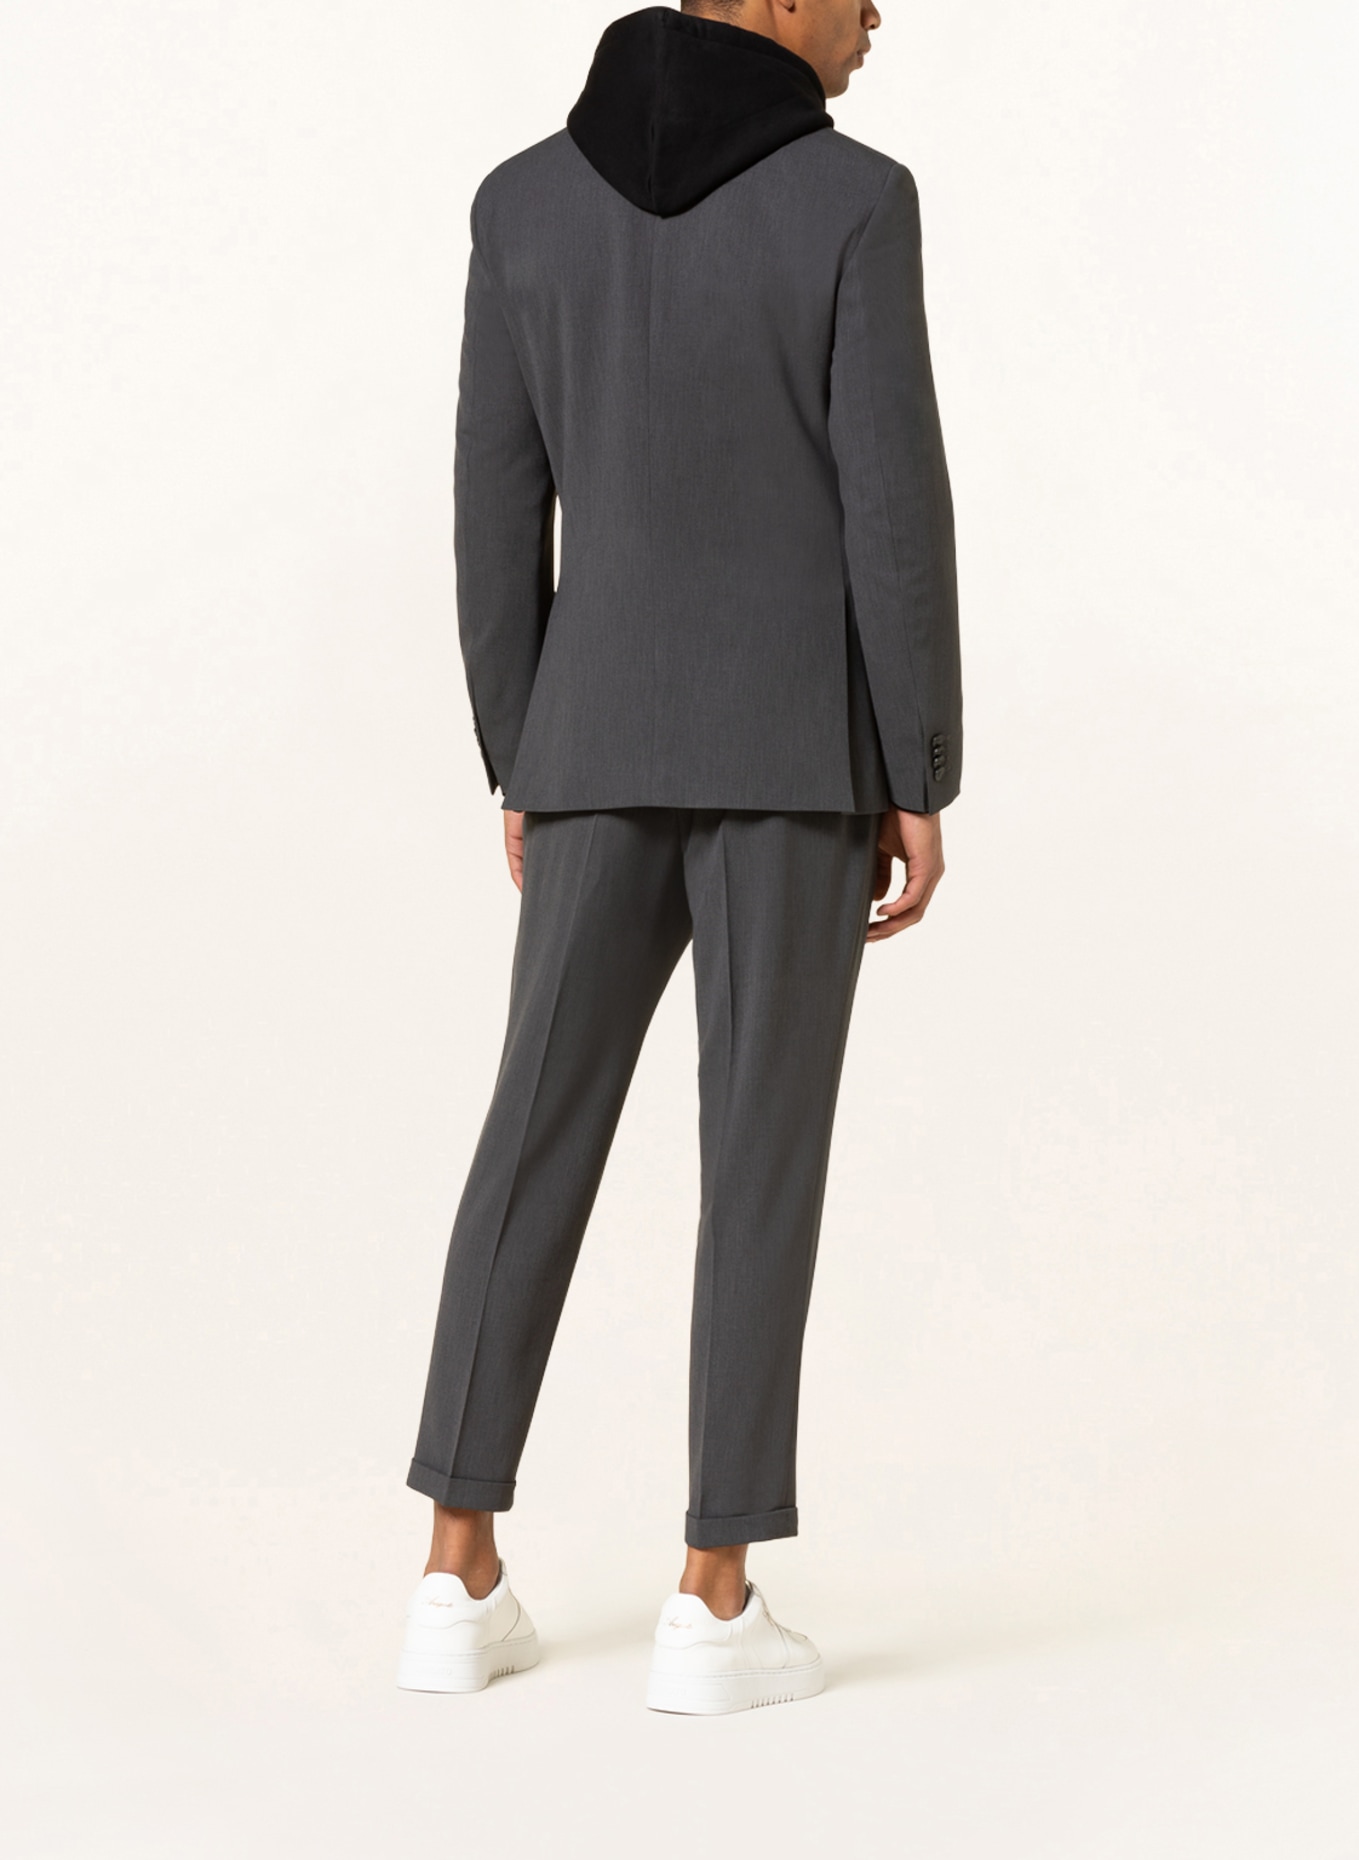 SPSR Suit jacket extra slim fit , Color: DARK GRAY (Image 3)